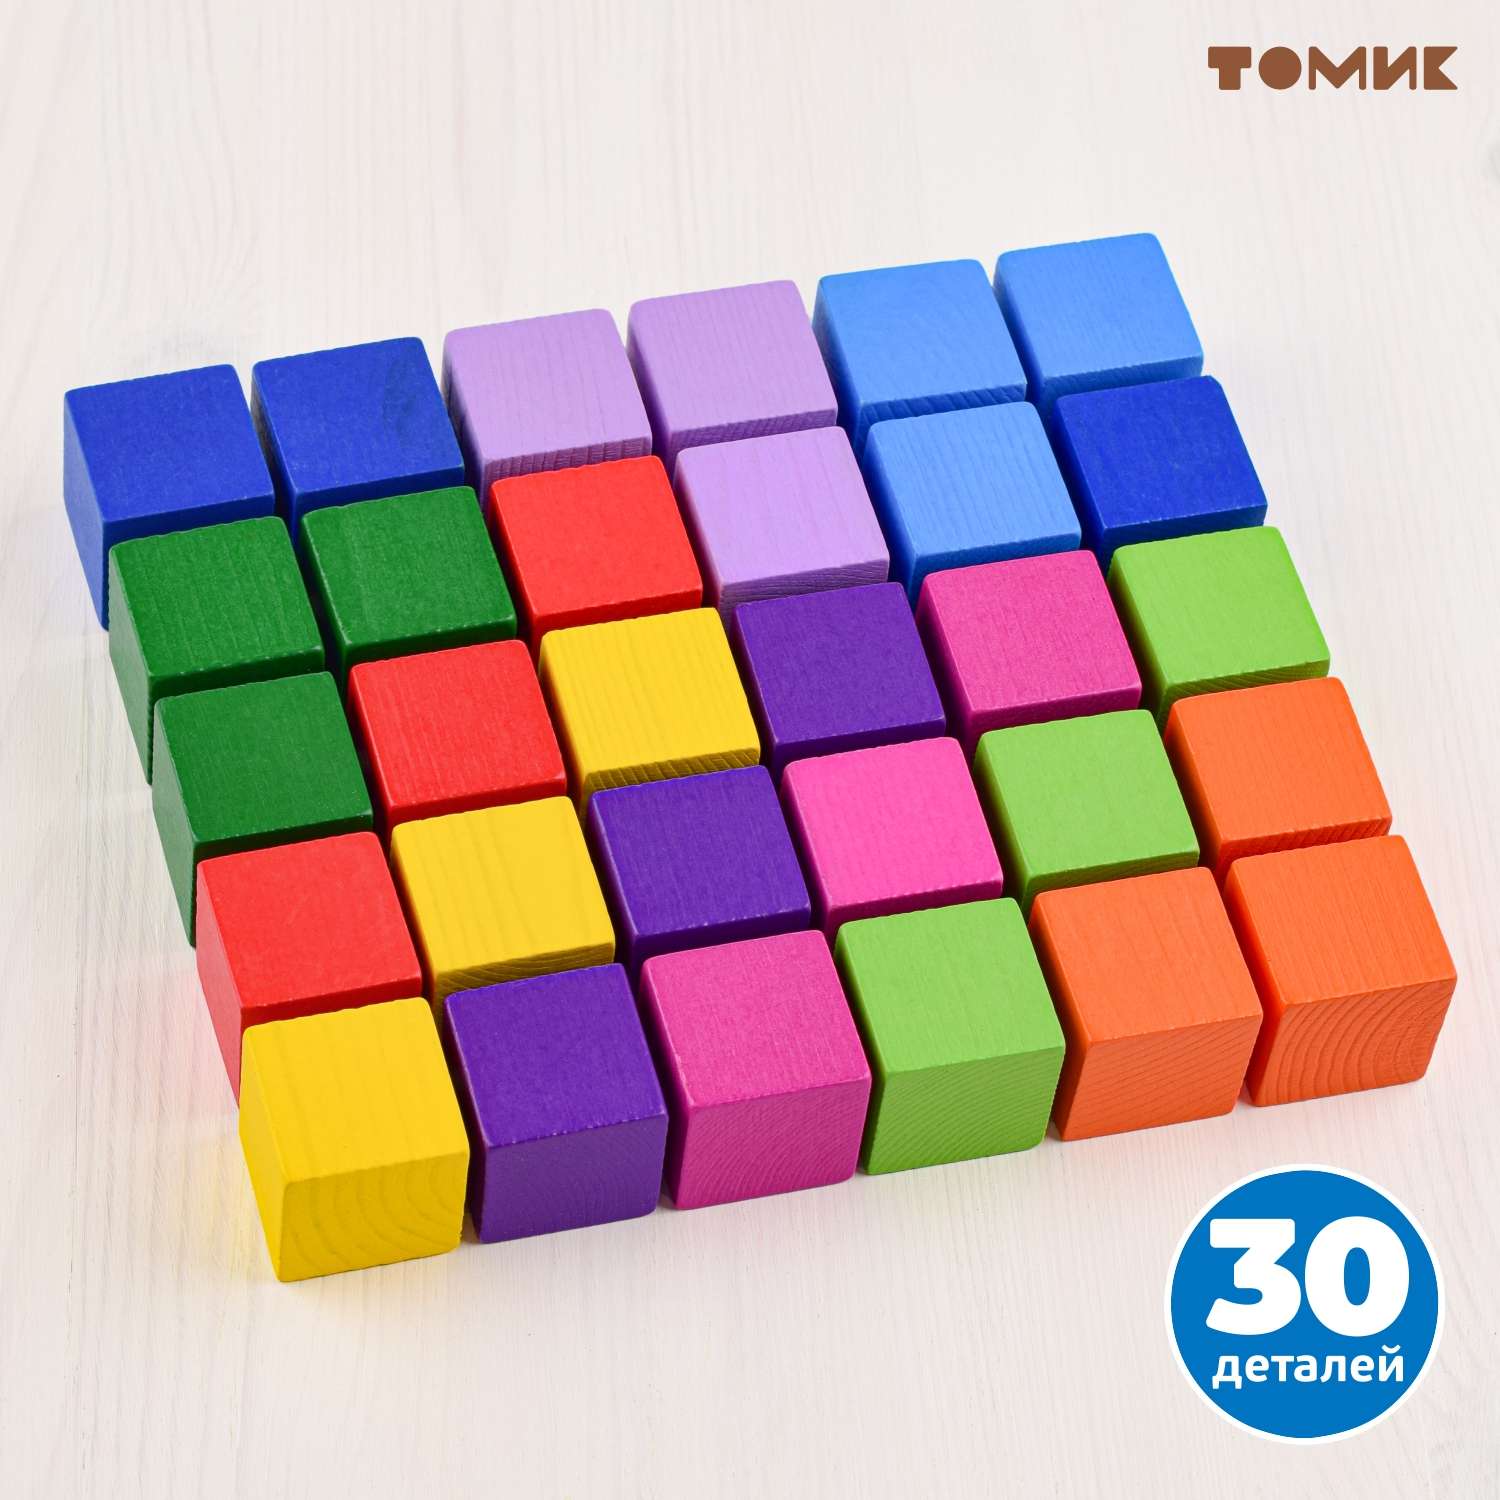 Кубики для детей Томик Цветные 30 деталей 1-45 - фото 3